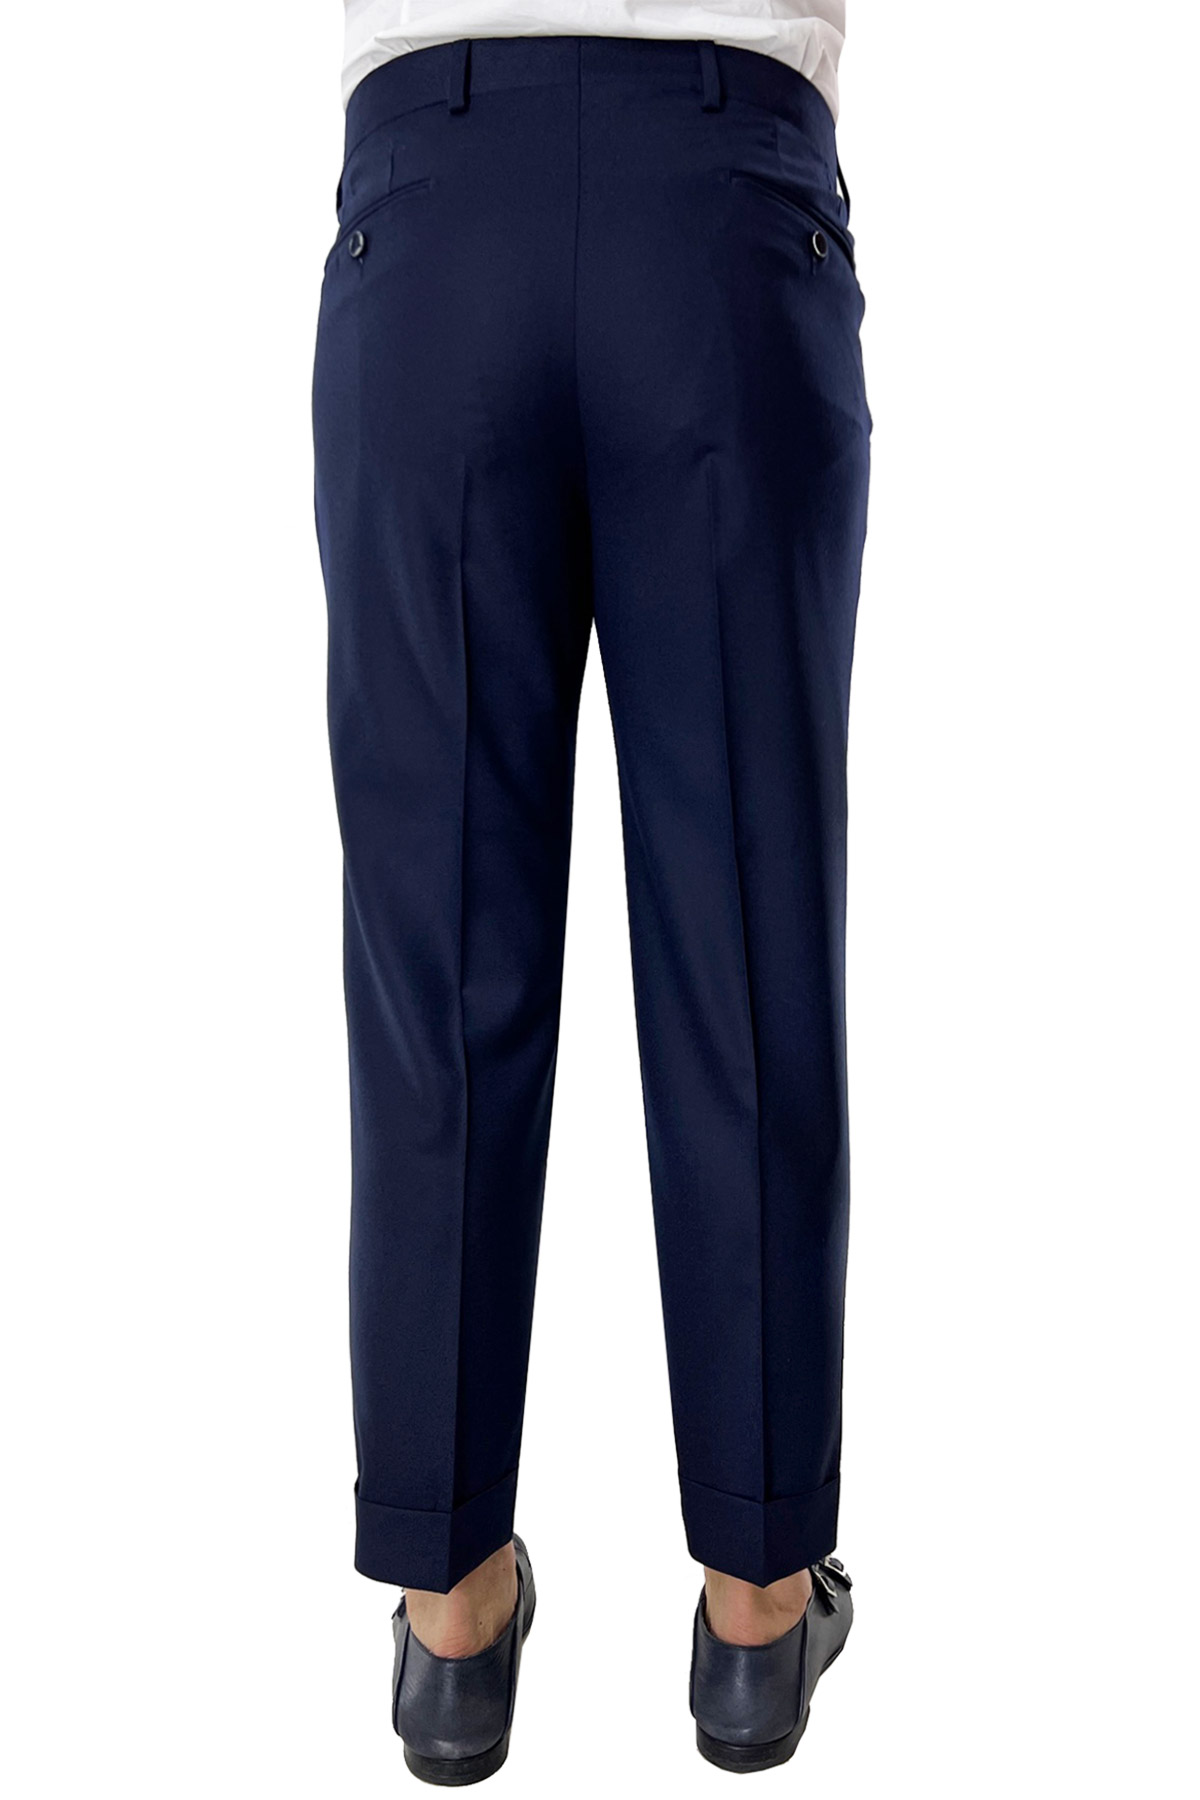 Pantalone uomo navy blu vita alta tasca america in lana flanella con doppia pinces Vitale Barberis Canonico